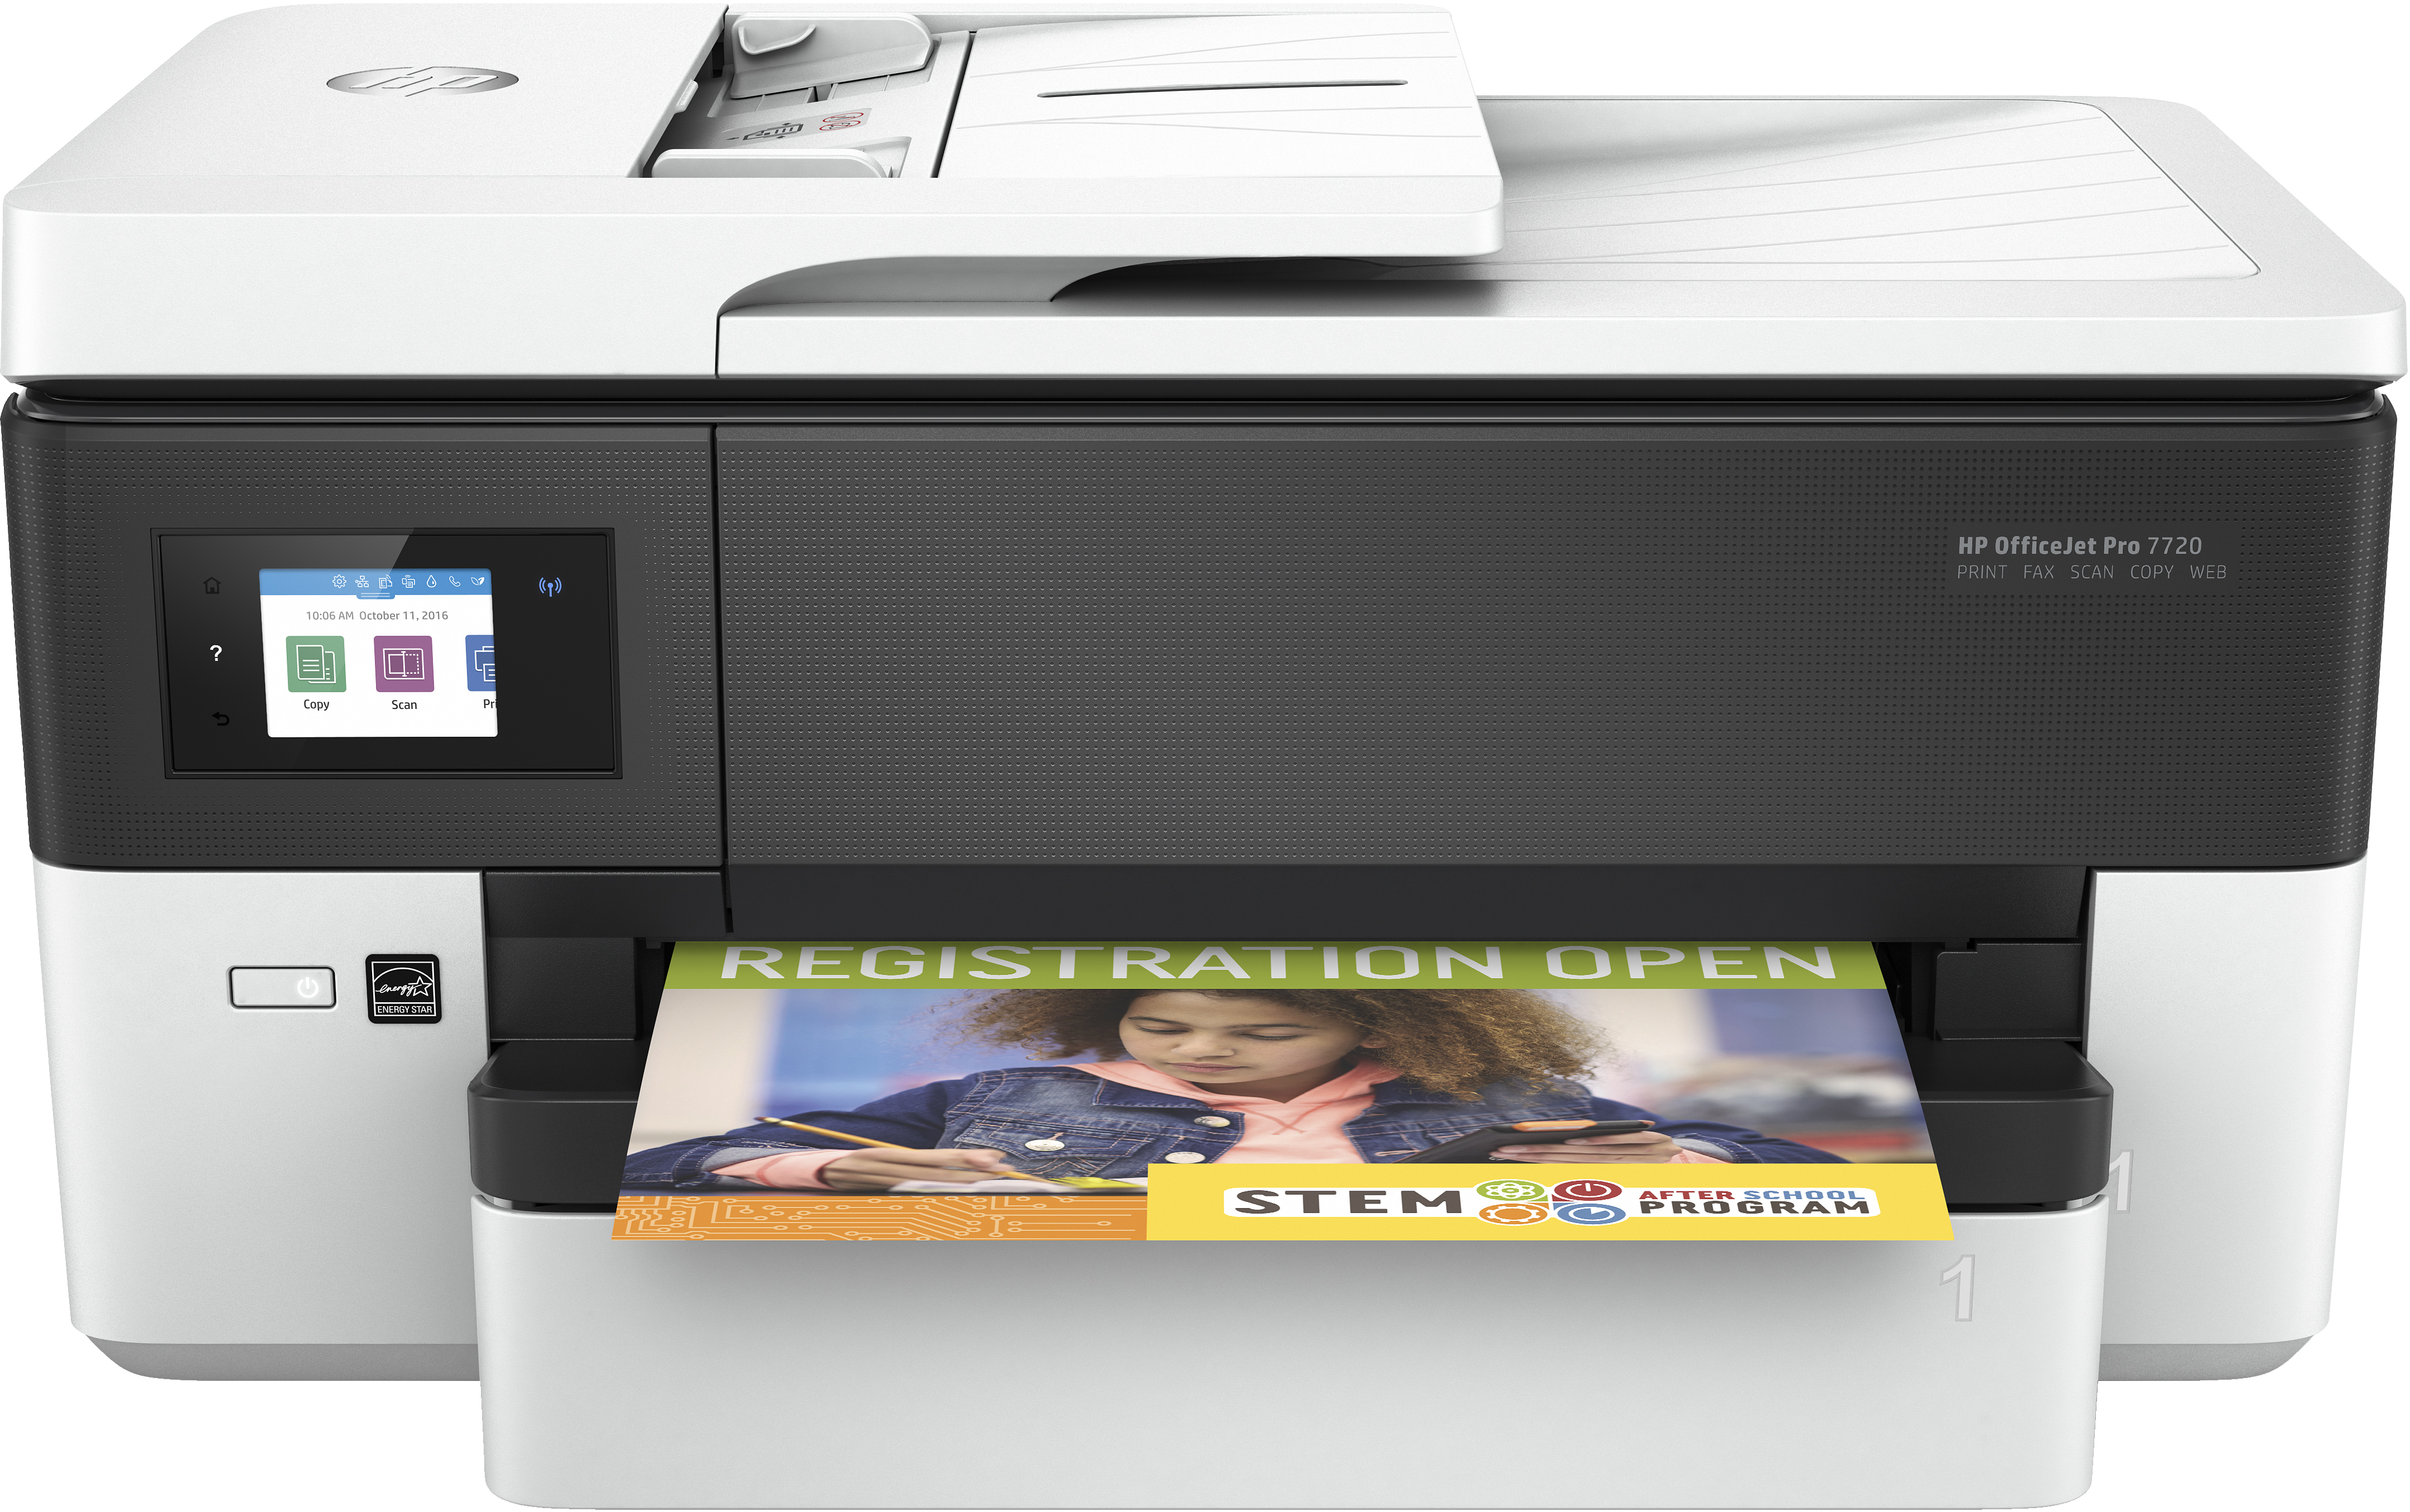 zonne Adviseren Discriminatie op grond van geslacht HP OfficeJet Pro HP OfficeJet Pro 7720 breedformaat All-in-One printer,  Kleur, Printer voor Kleine kantoren, Printen, kopiëren, scannen, faxen,  Invoer voor 35 vel; Printen via USB-poort aan voorzijde; Dubbelzijdig  printen (Y0S18A) kopen »